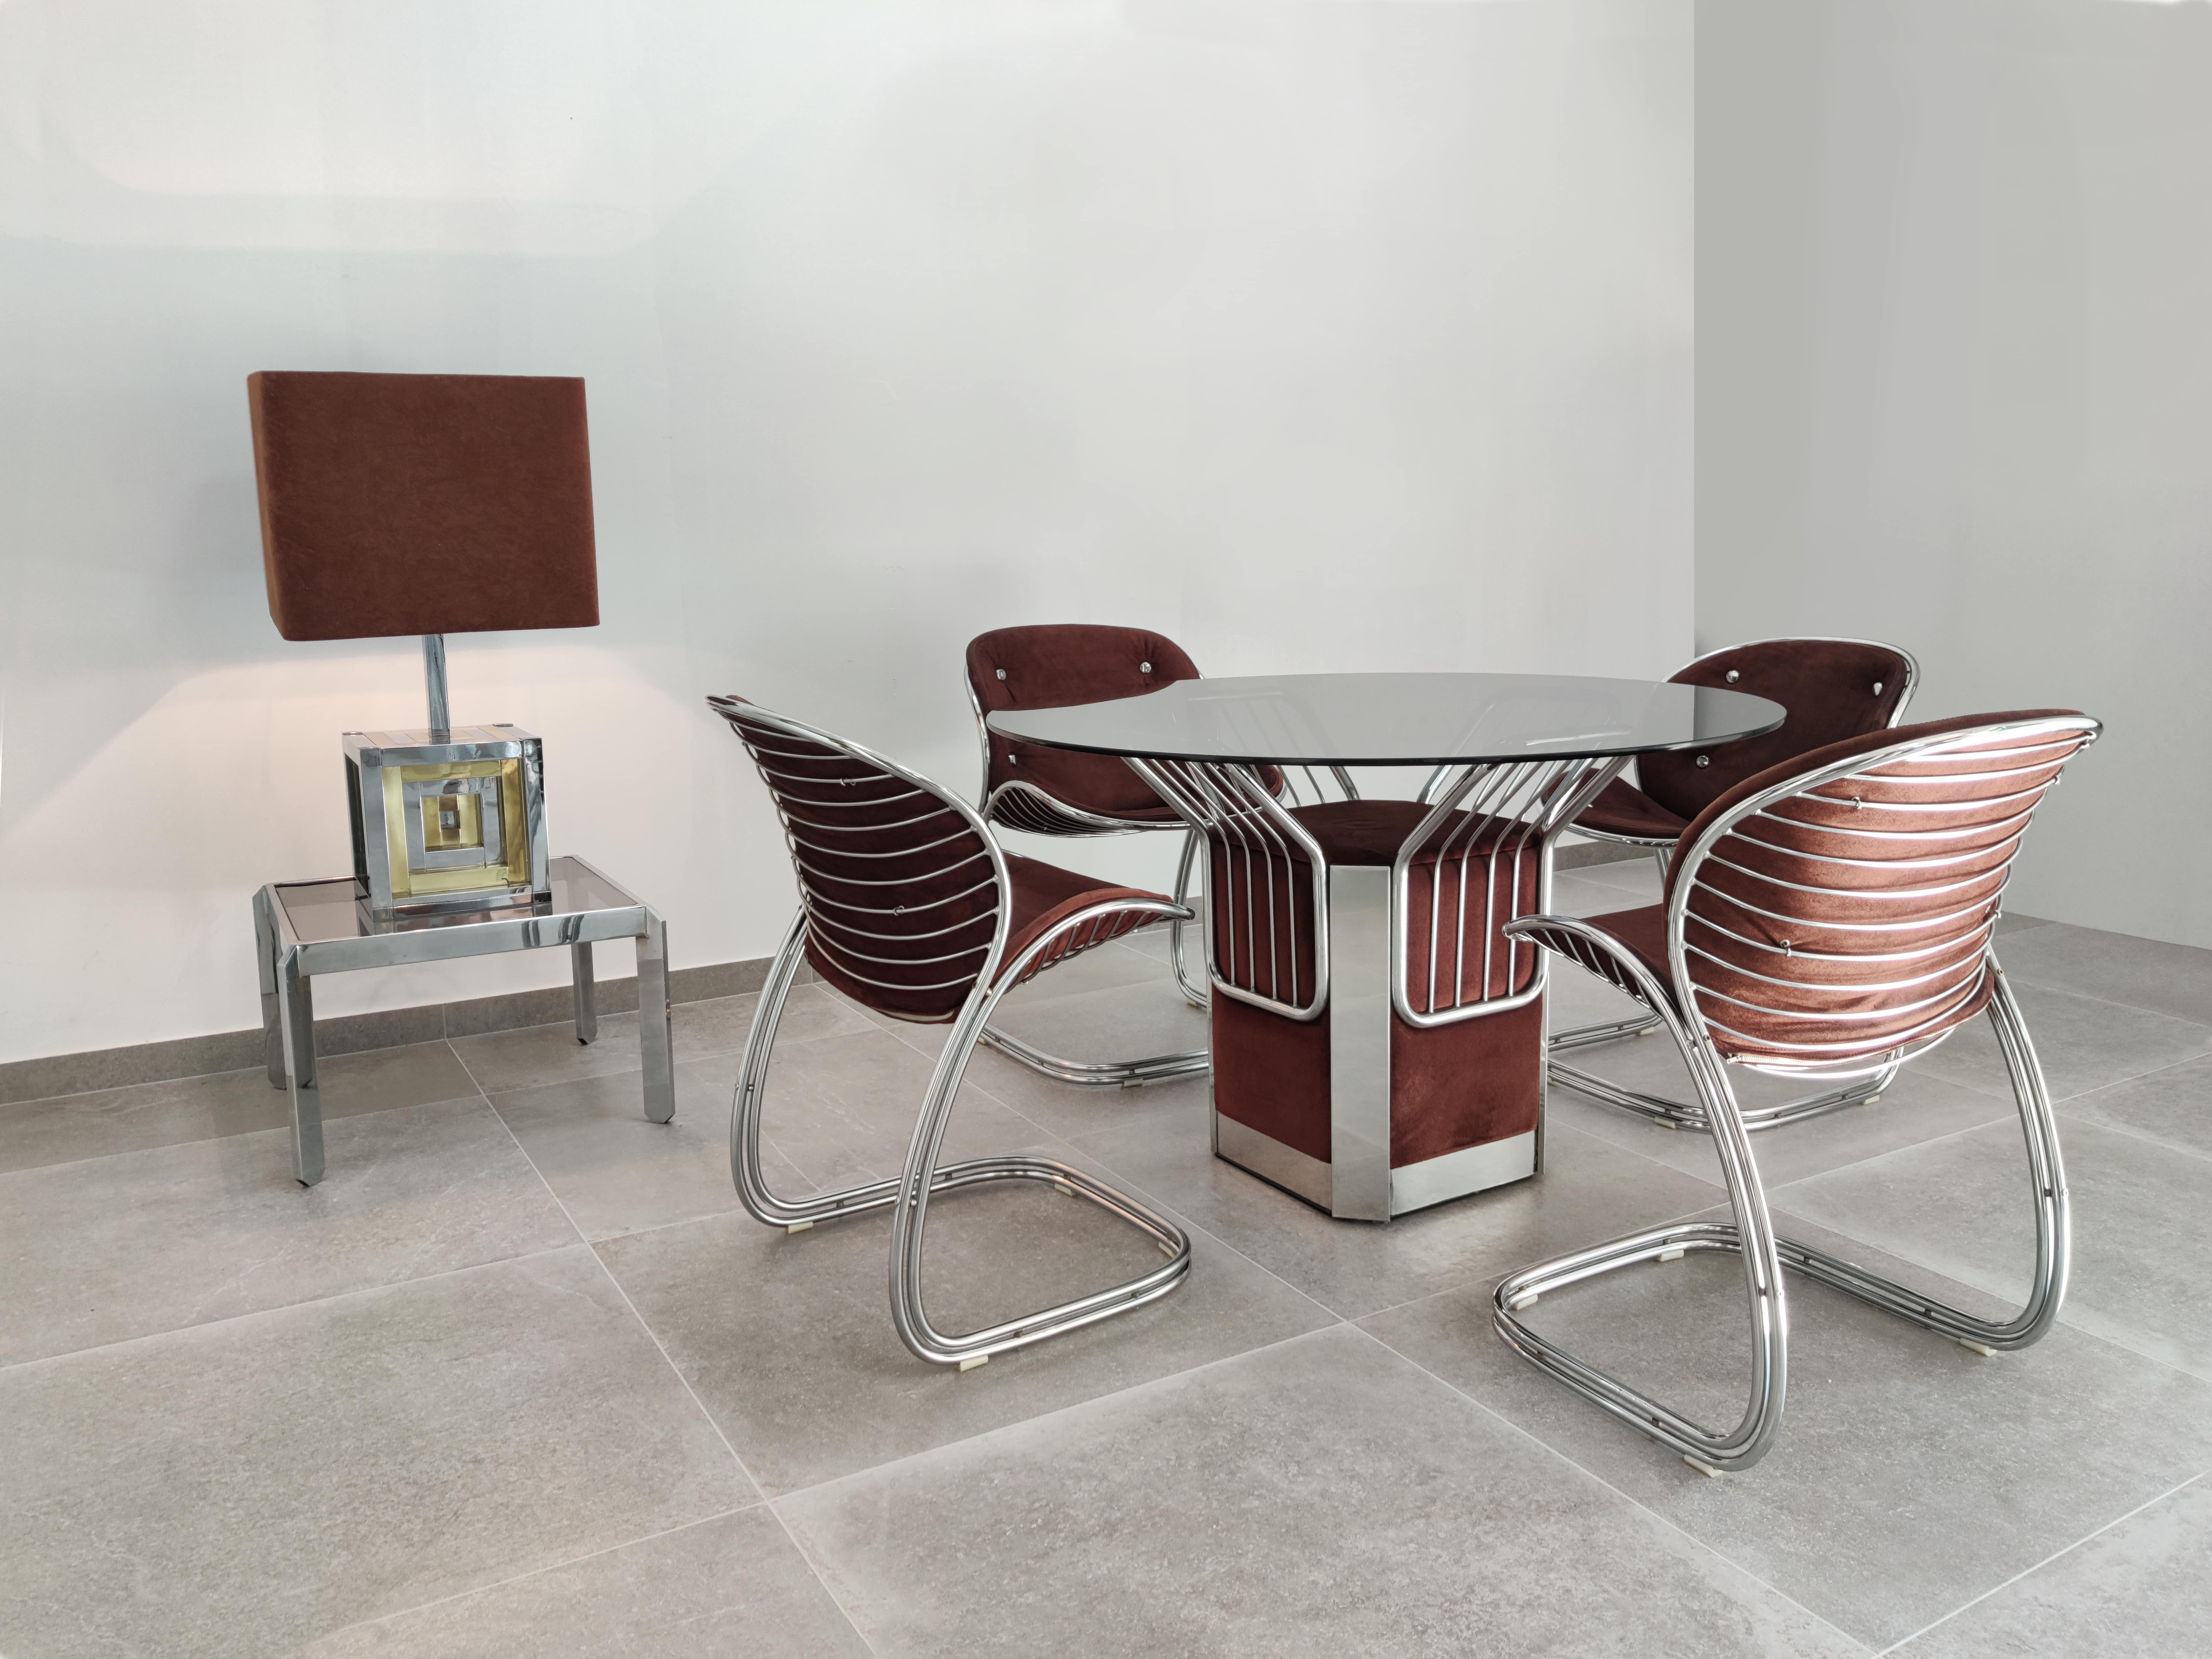 Tisch und 4 Stühle von Gastone Rinaldi für Vidal Grau, 1970er Jahre (Space Age) im Angebot